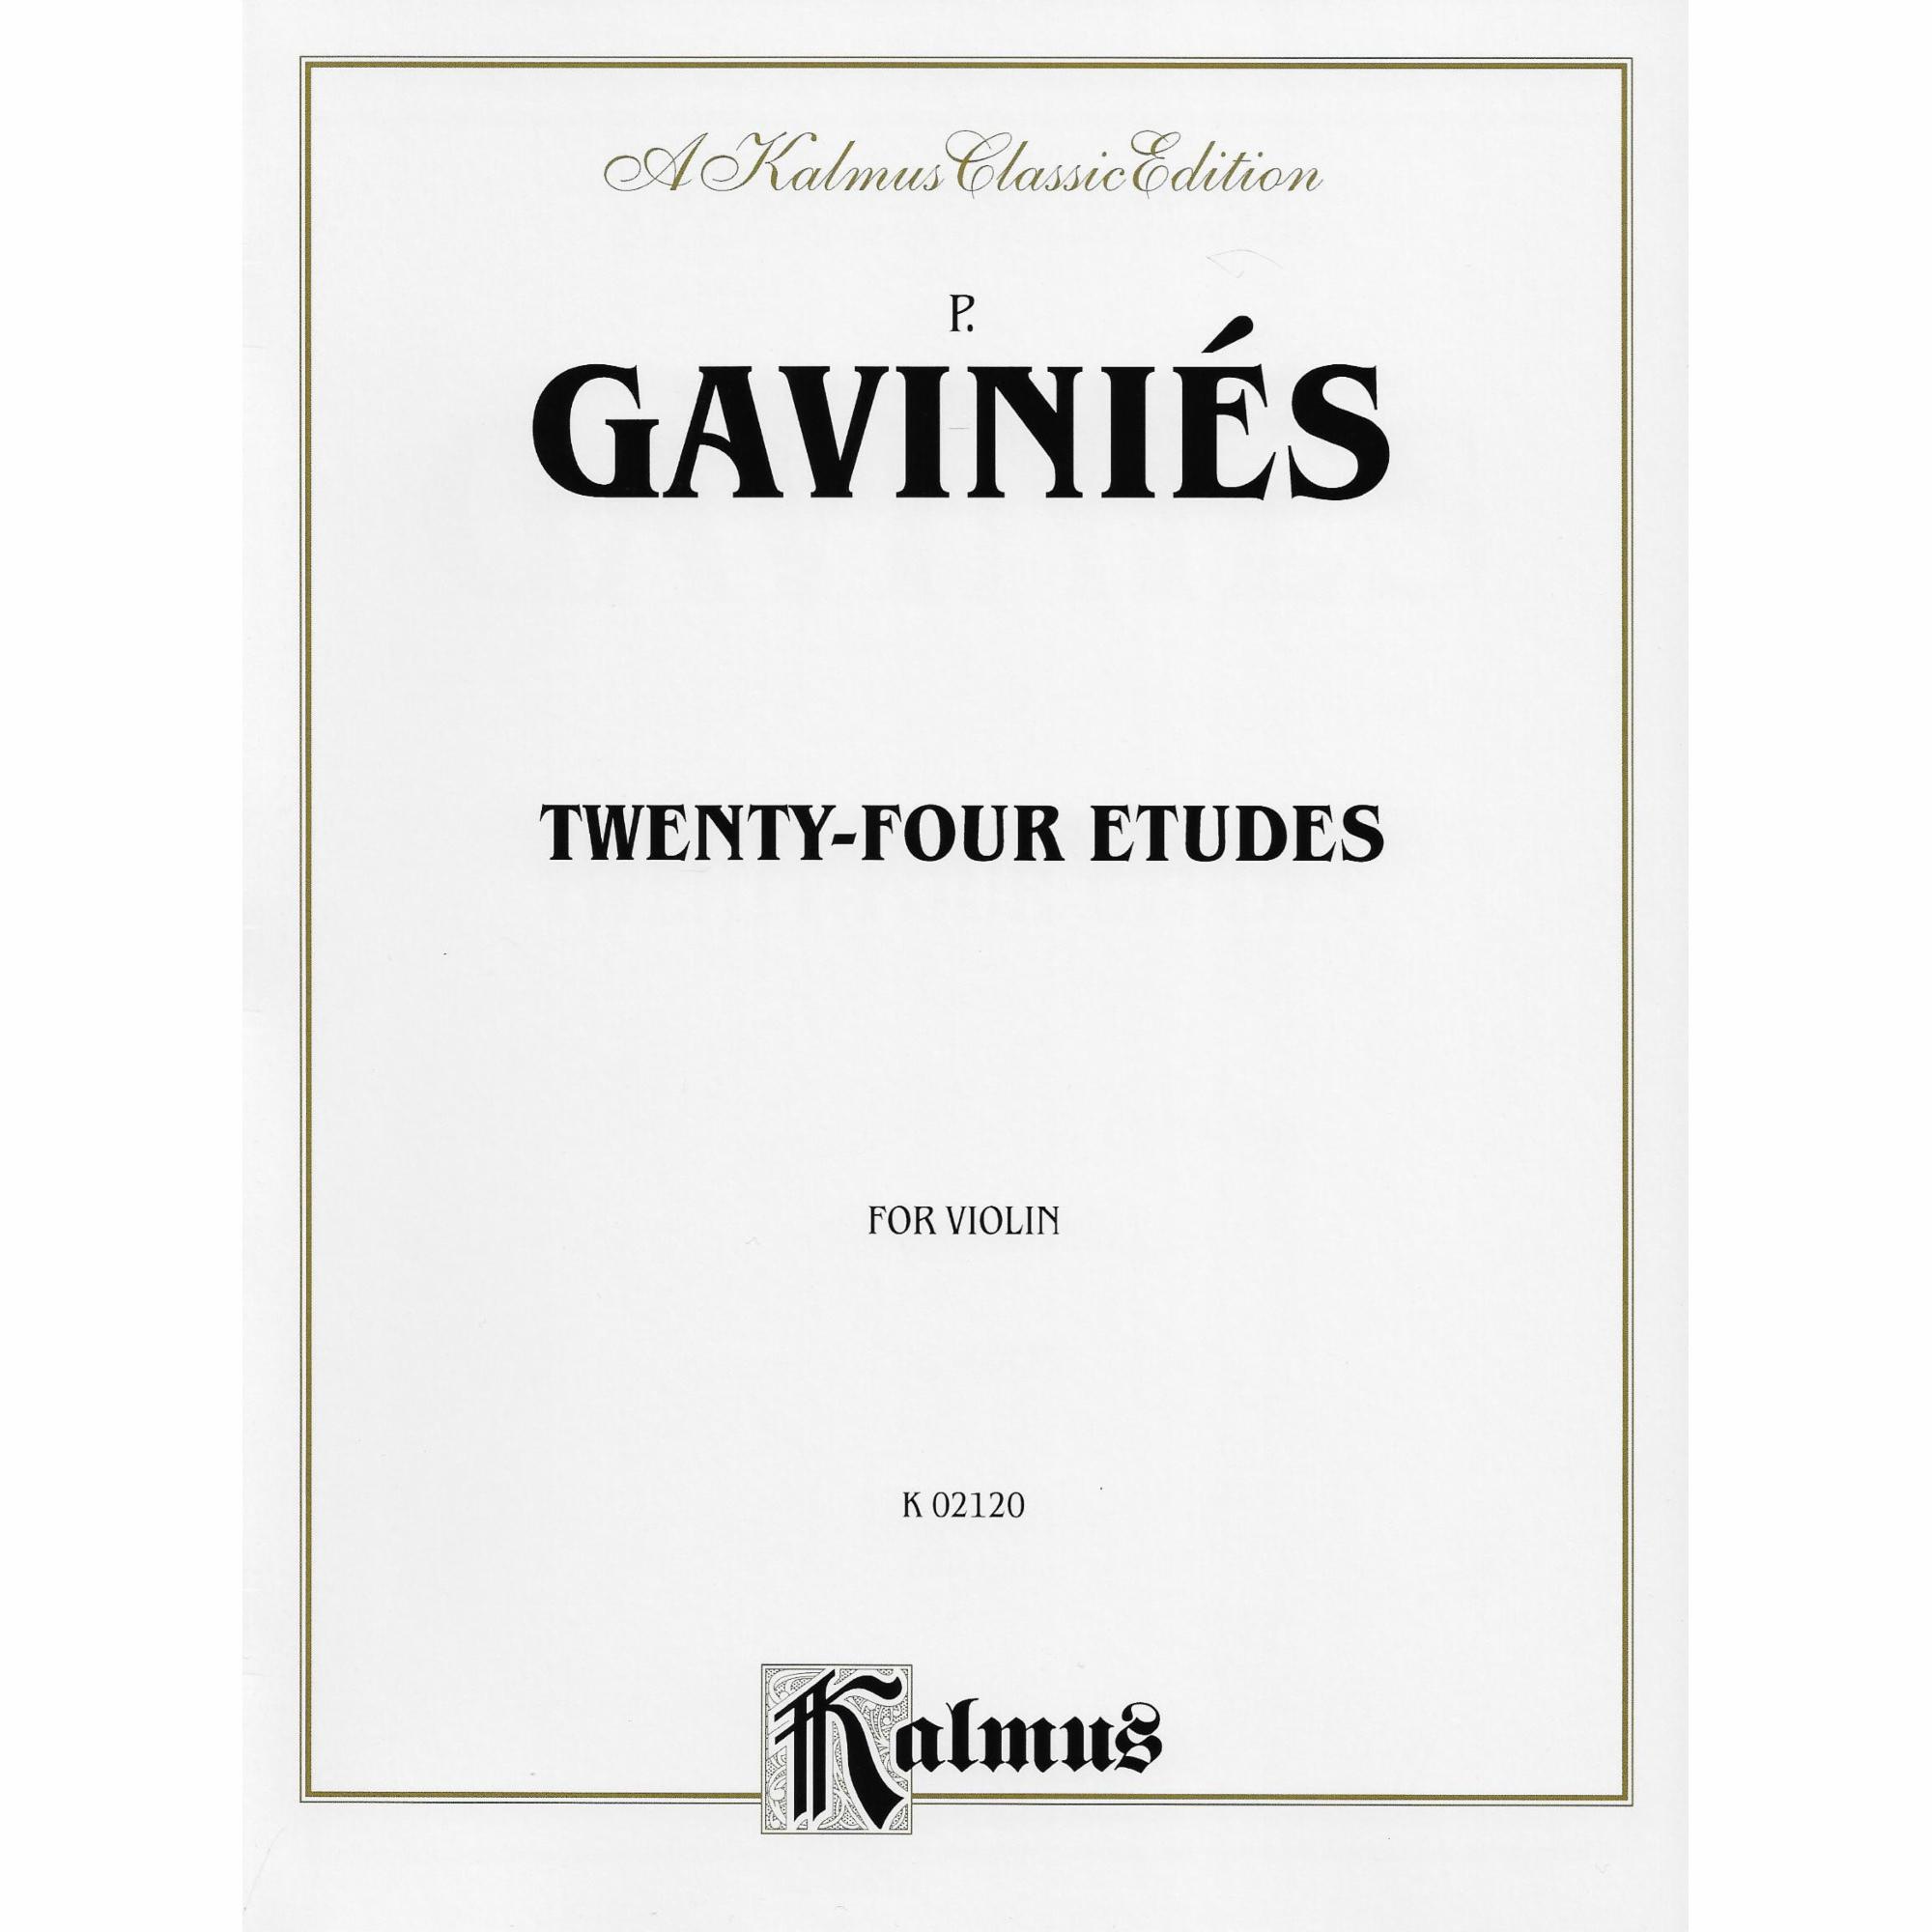 Gavinies -- Twenty-Four Etudes for Violin